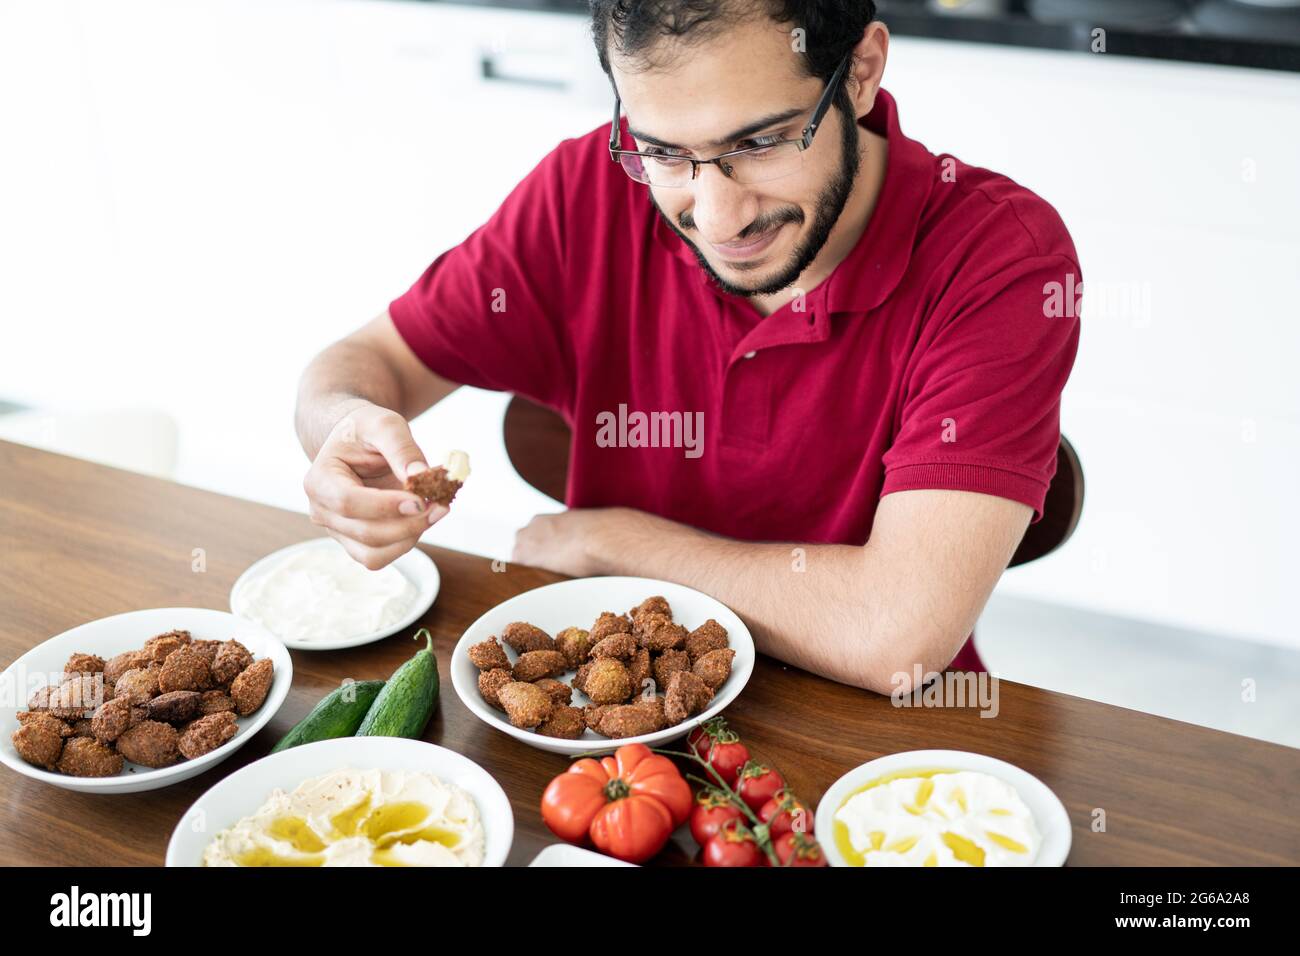 Joven de Oriente Medio sentado y comiendo comida tradicional sola Foto de stock